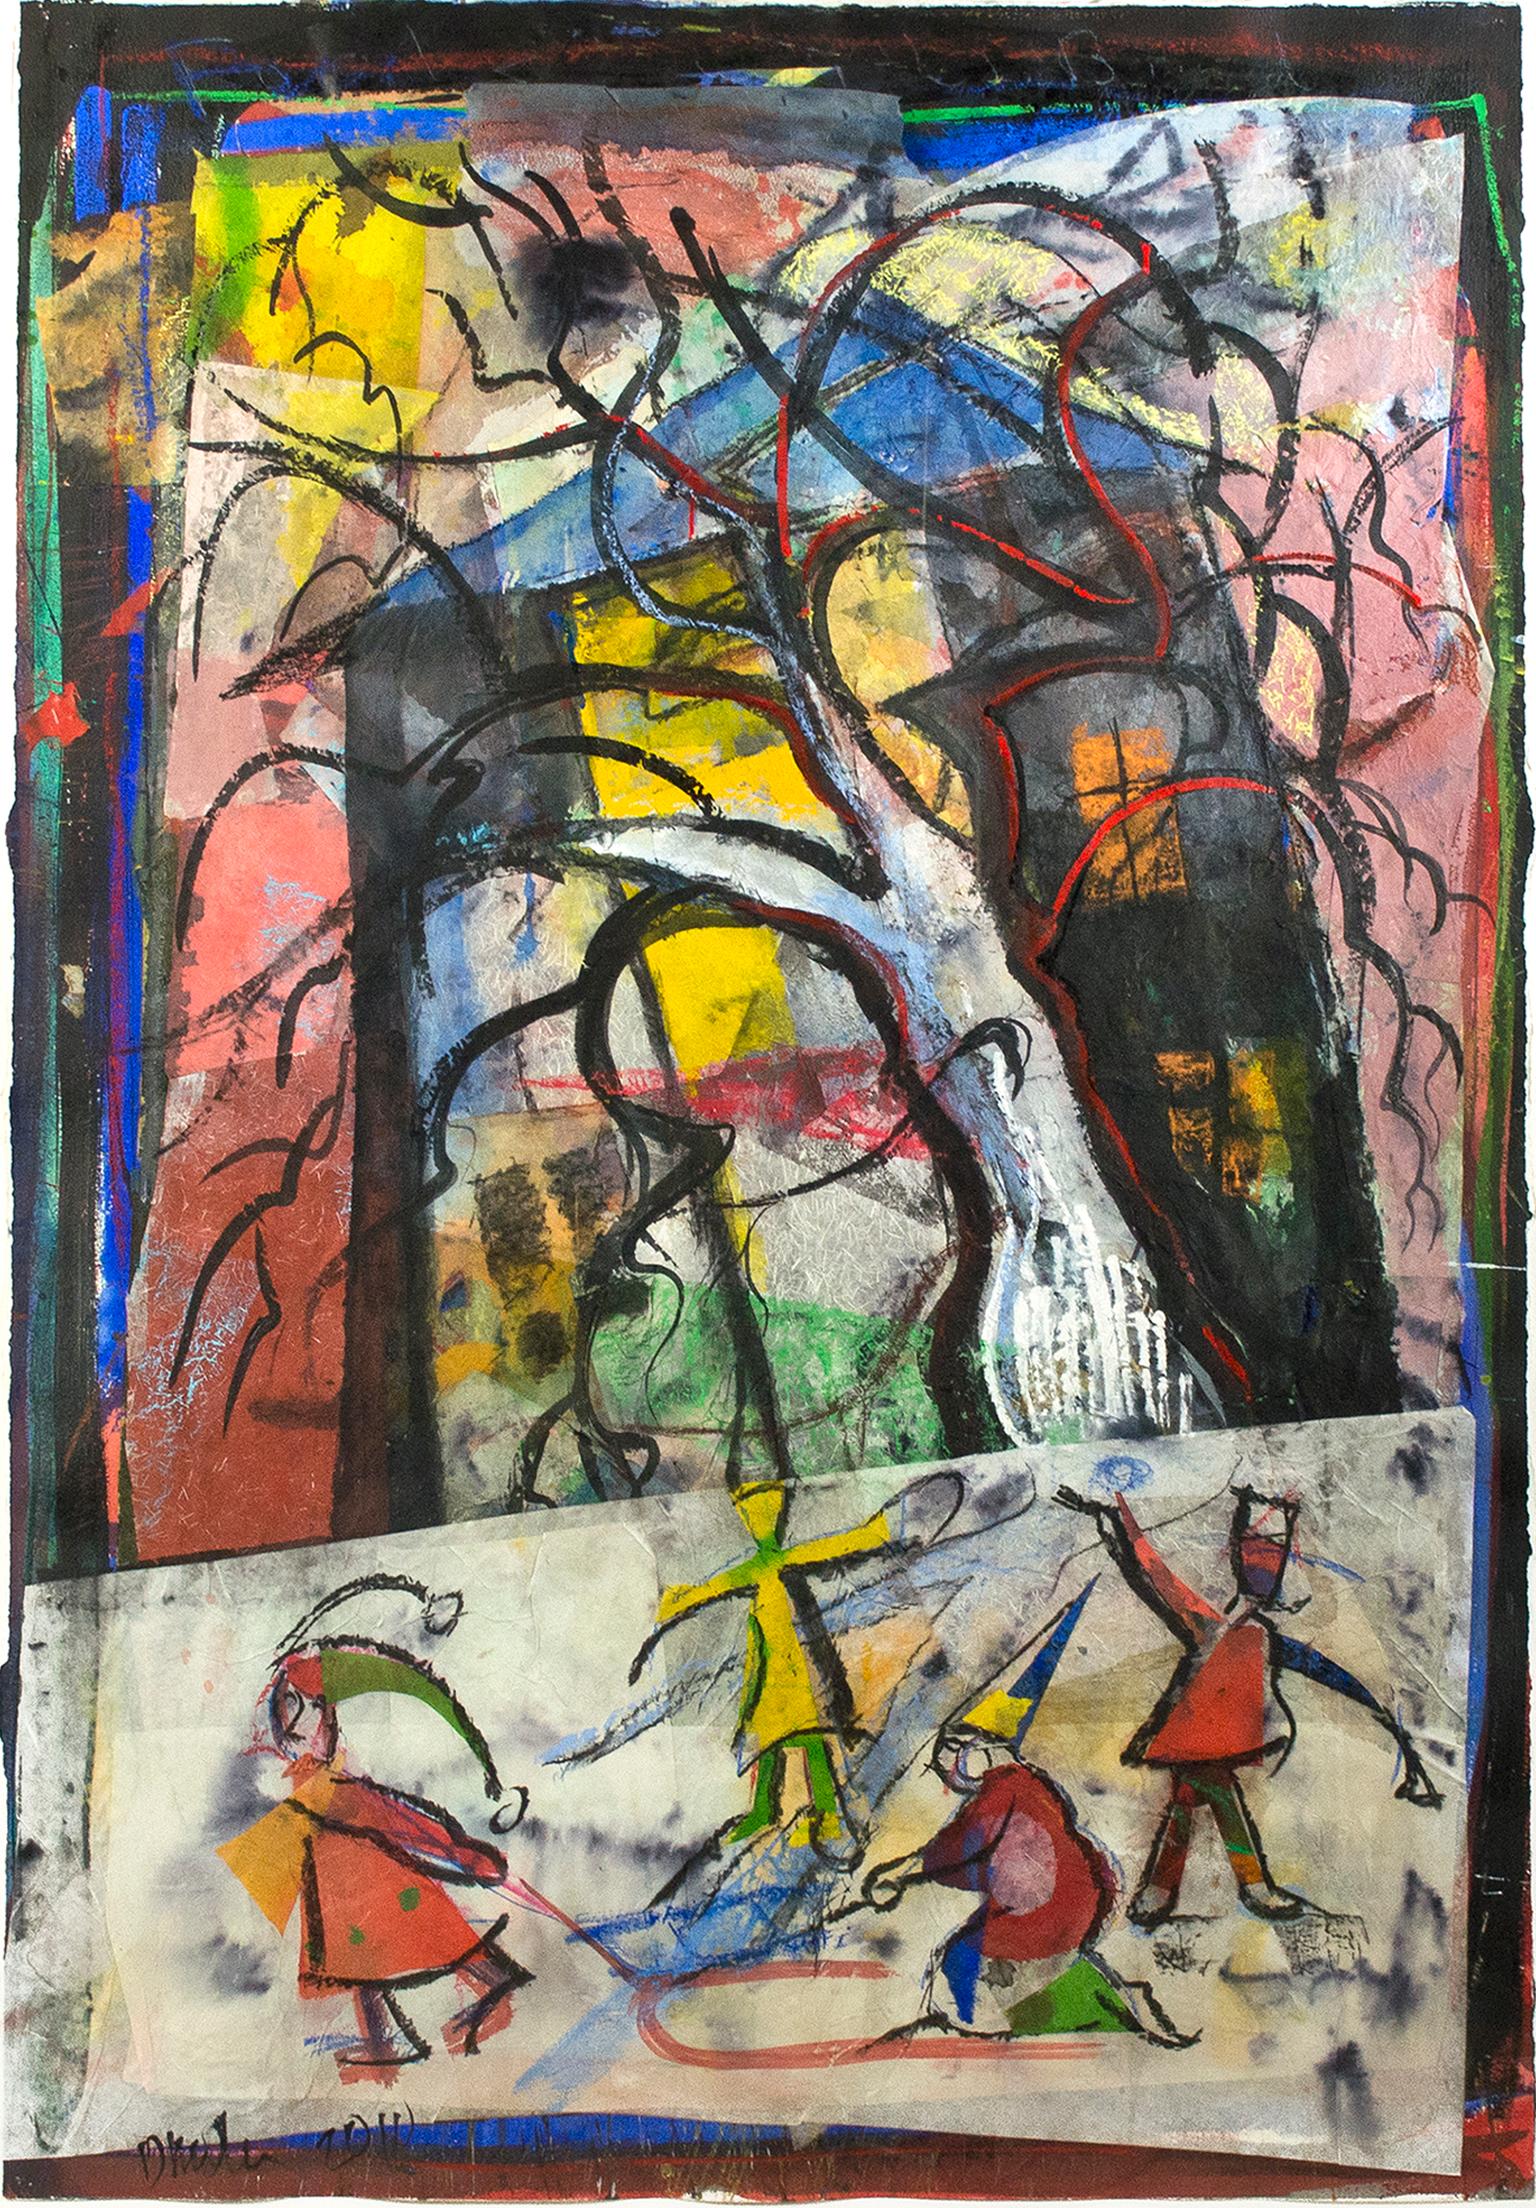 "Sledding by the Big Tree" (Sledding by the Big Tree), peinture colorée au collage de techniques mixtes de Dan Muller